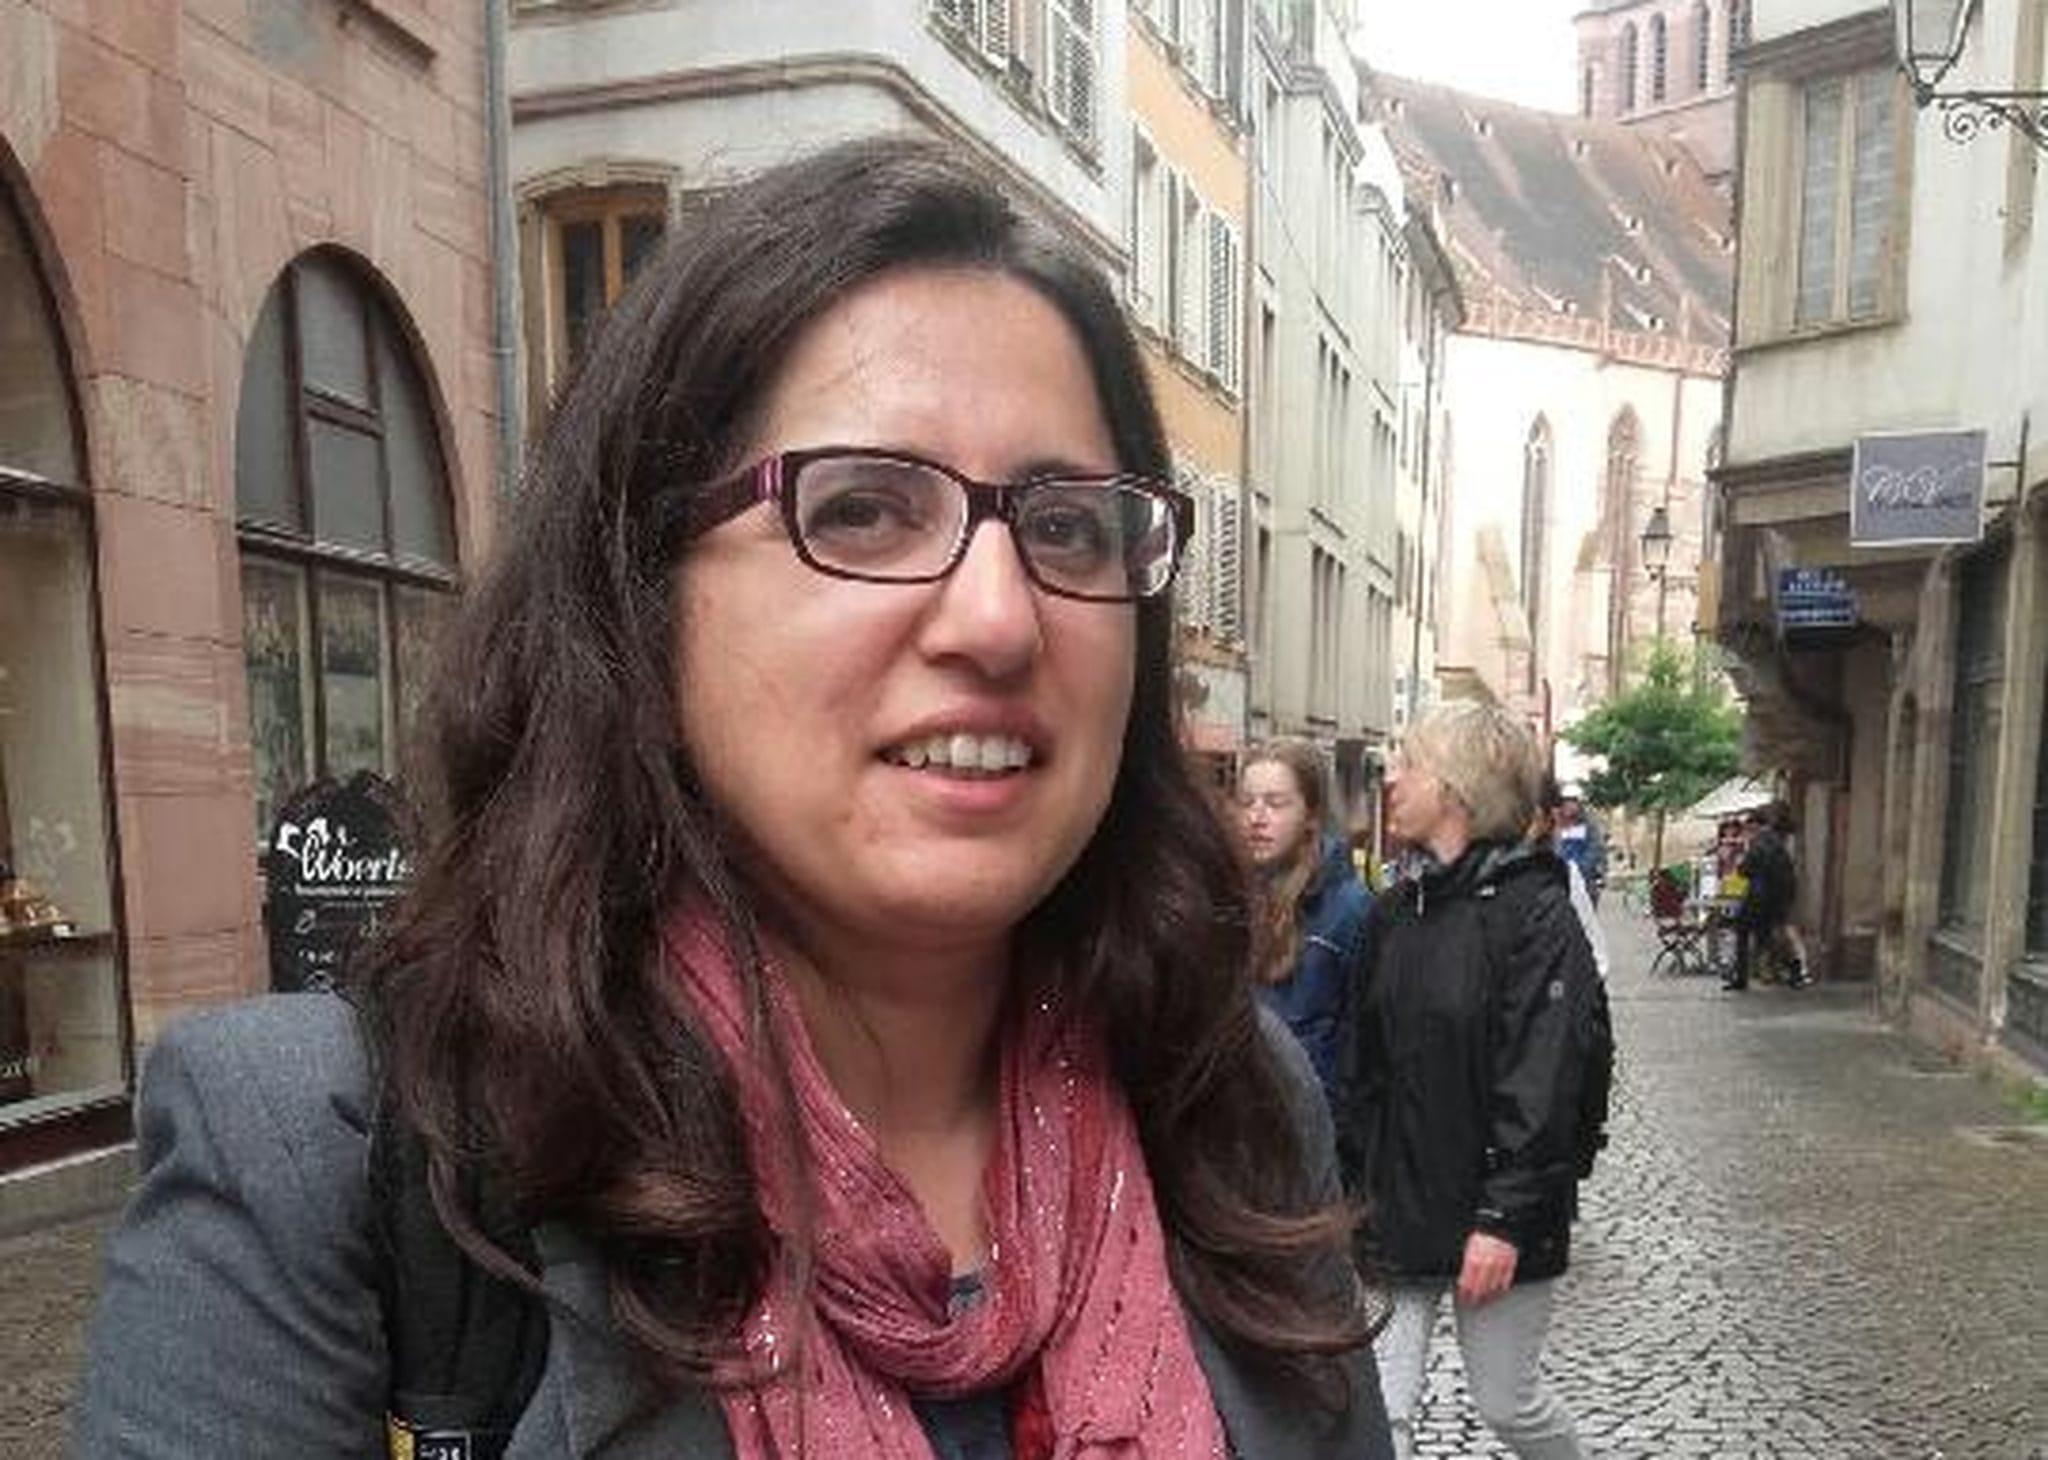 Hülliya Turan à Strasbourg en juin 2017 (Photo L'Humanité)